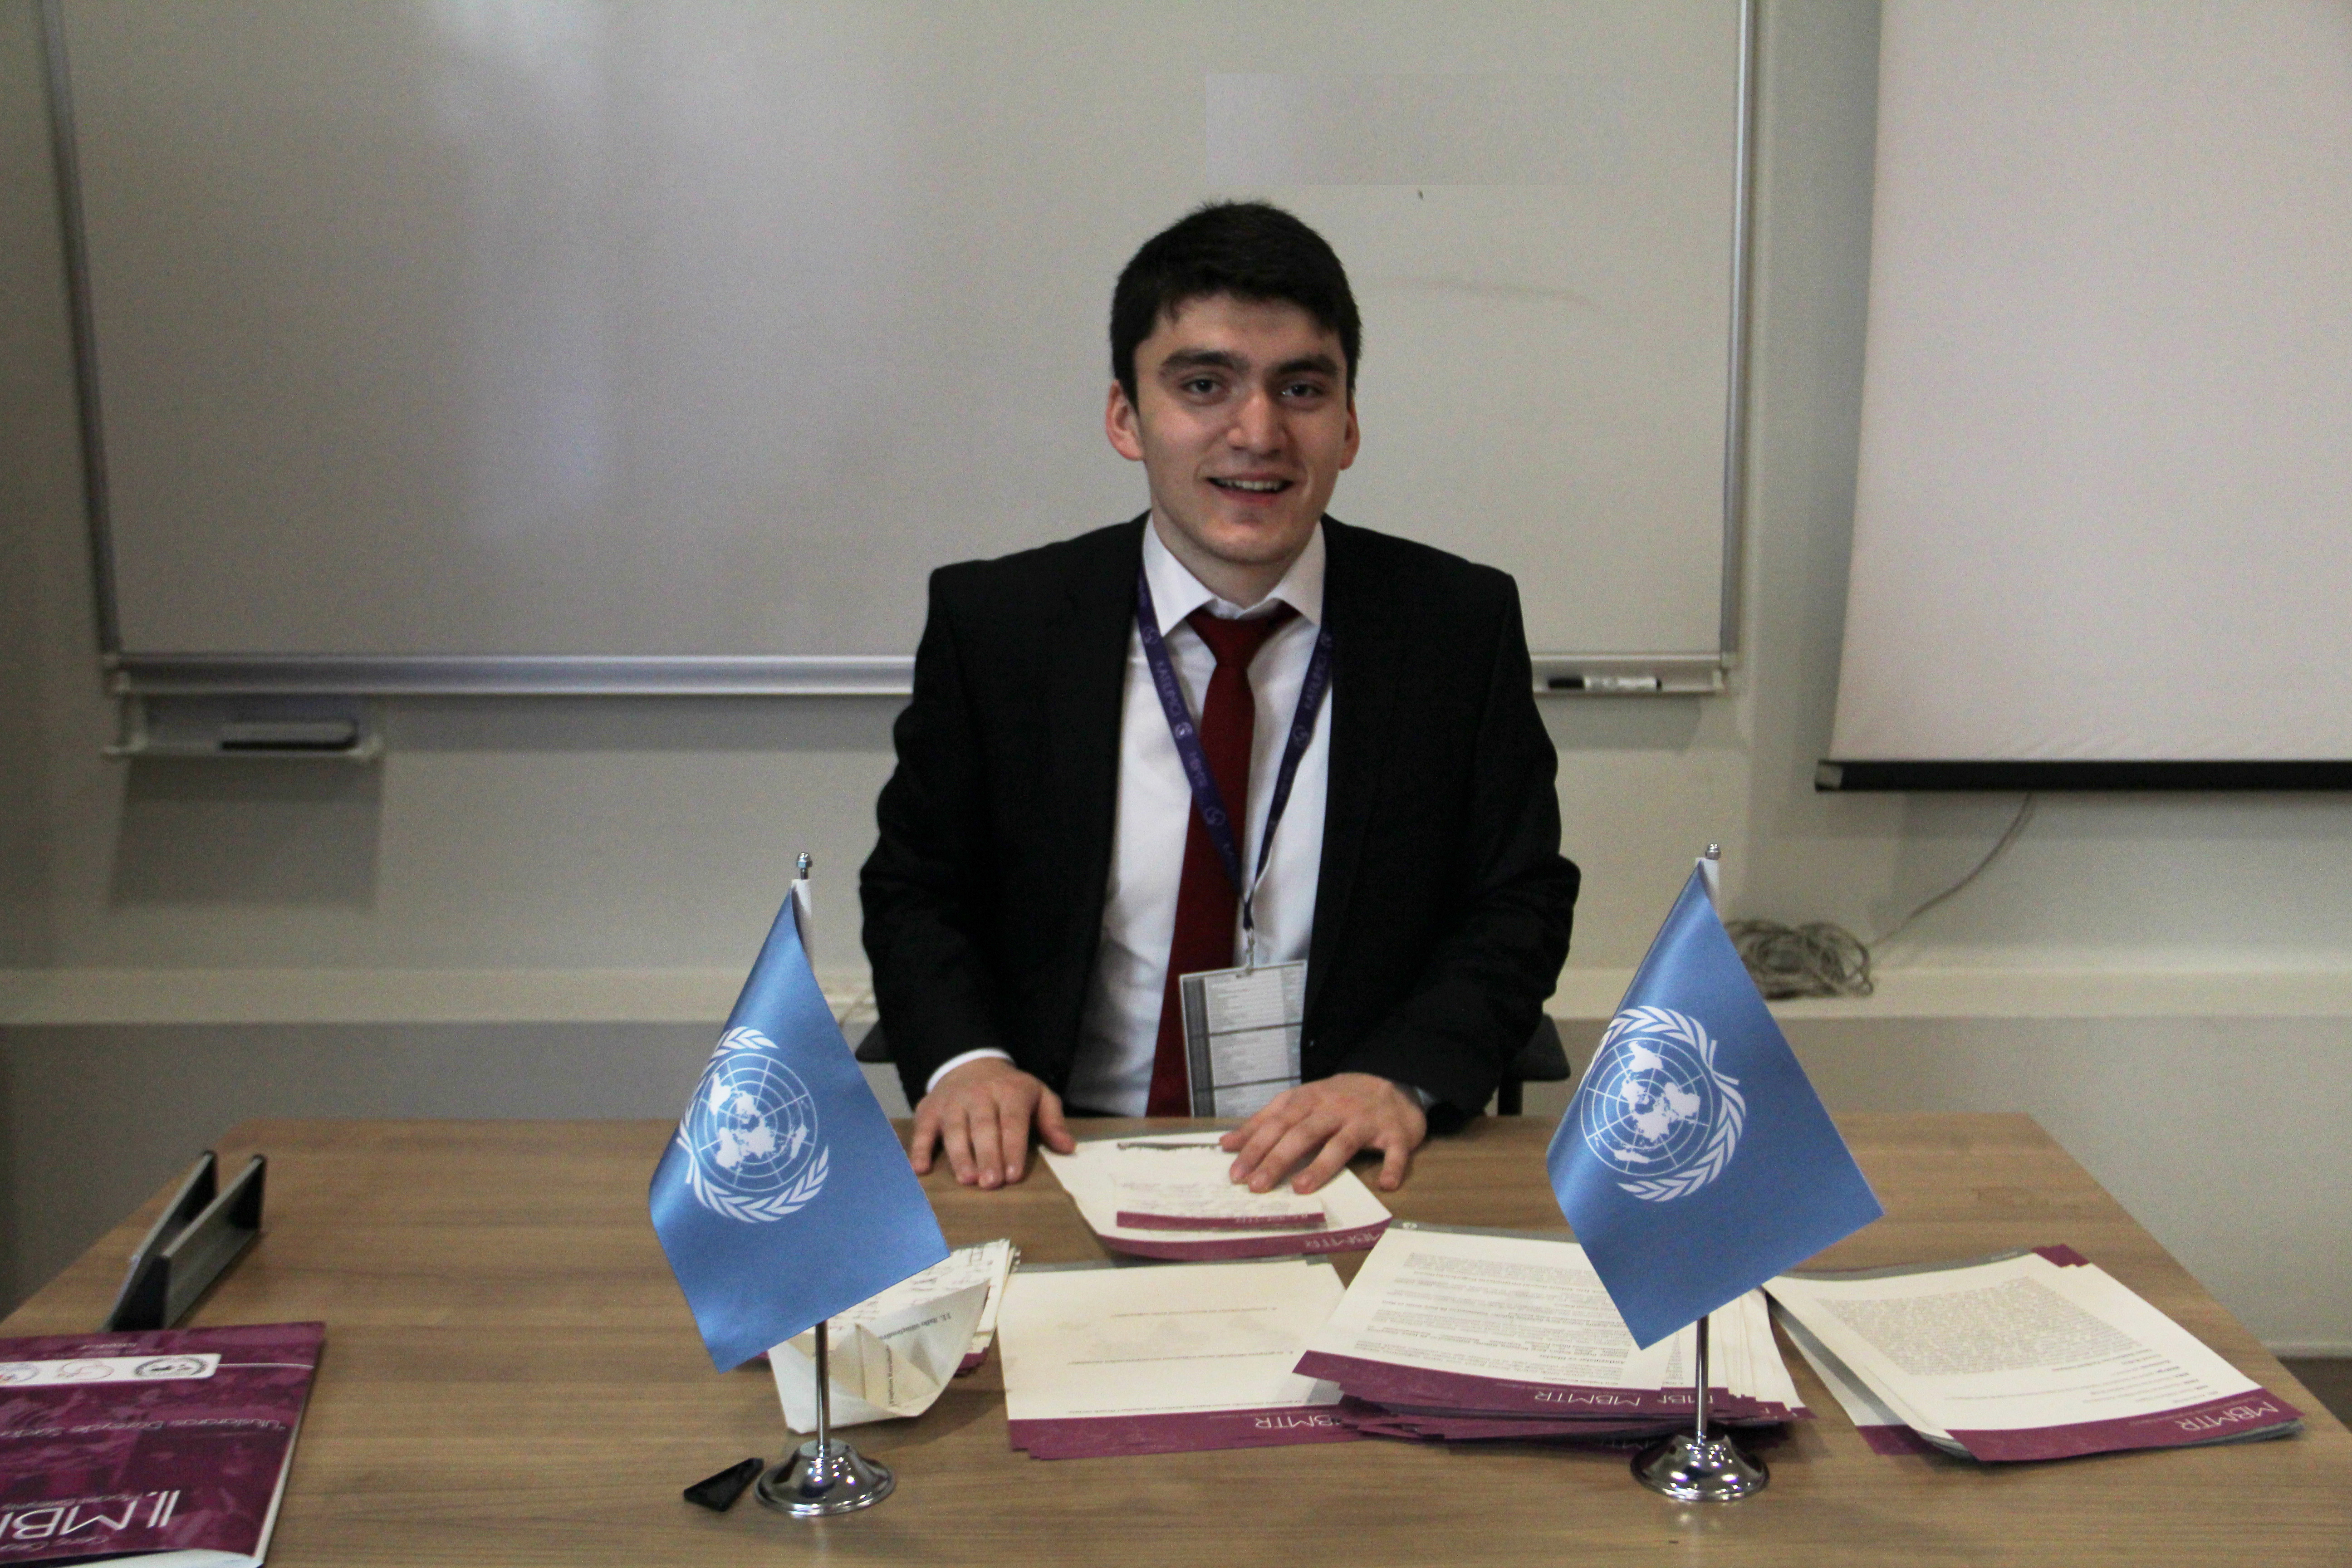 3.Model Birleşmiş Milletler Türkiye Konferansı gerçekleşti.